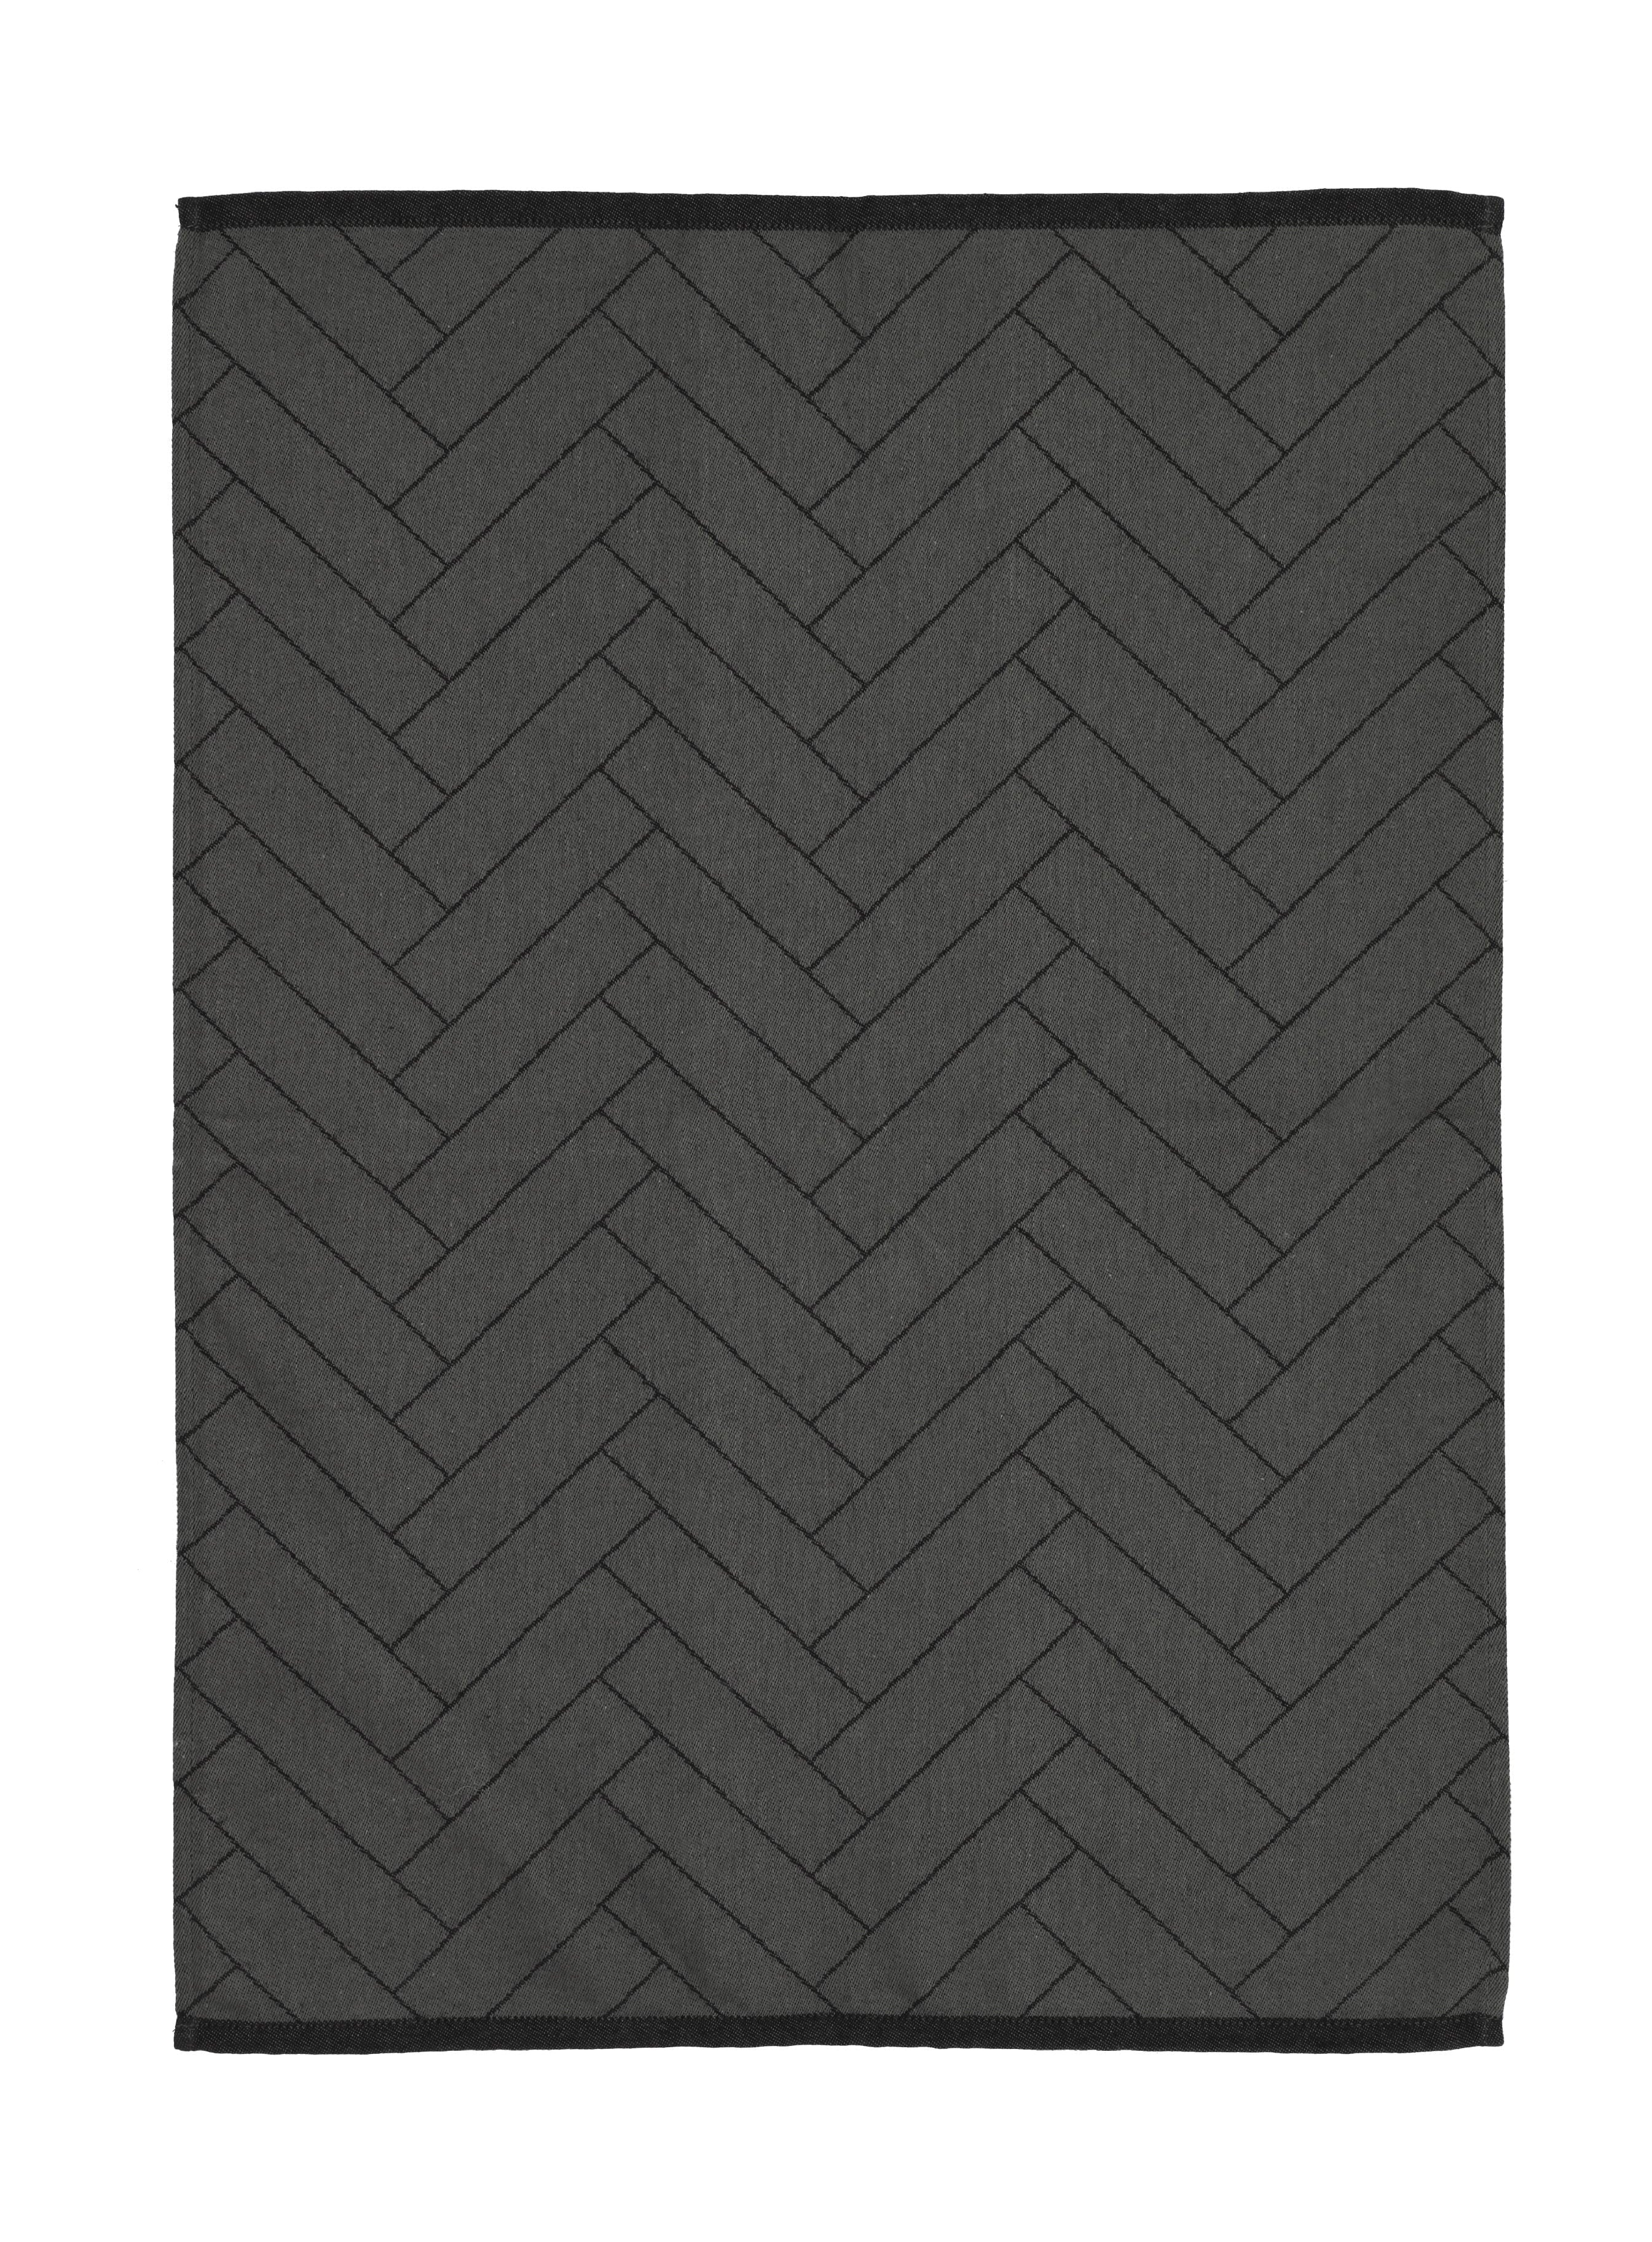 Södahl Tiles Tethandduk 50x70 cm, svart